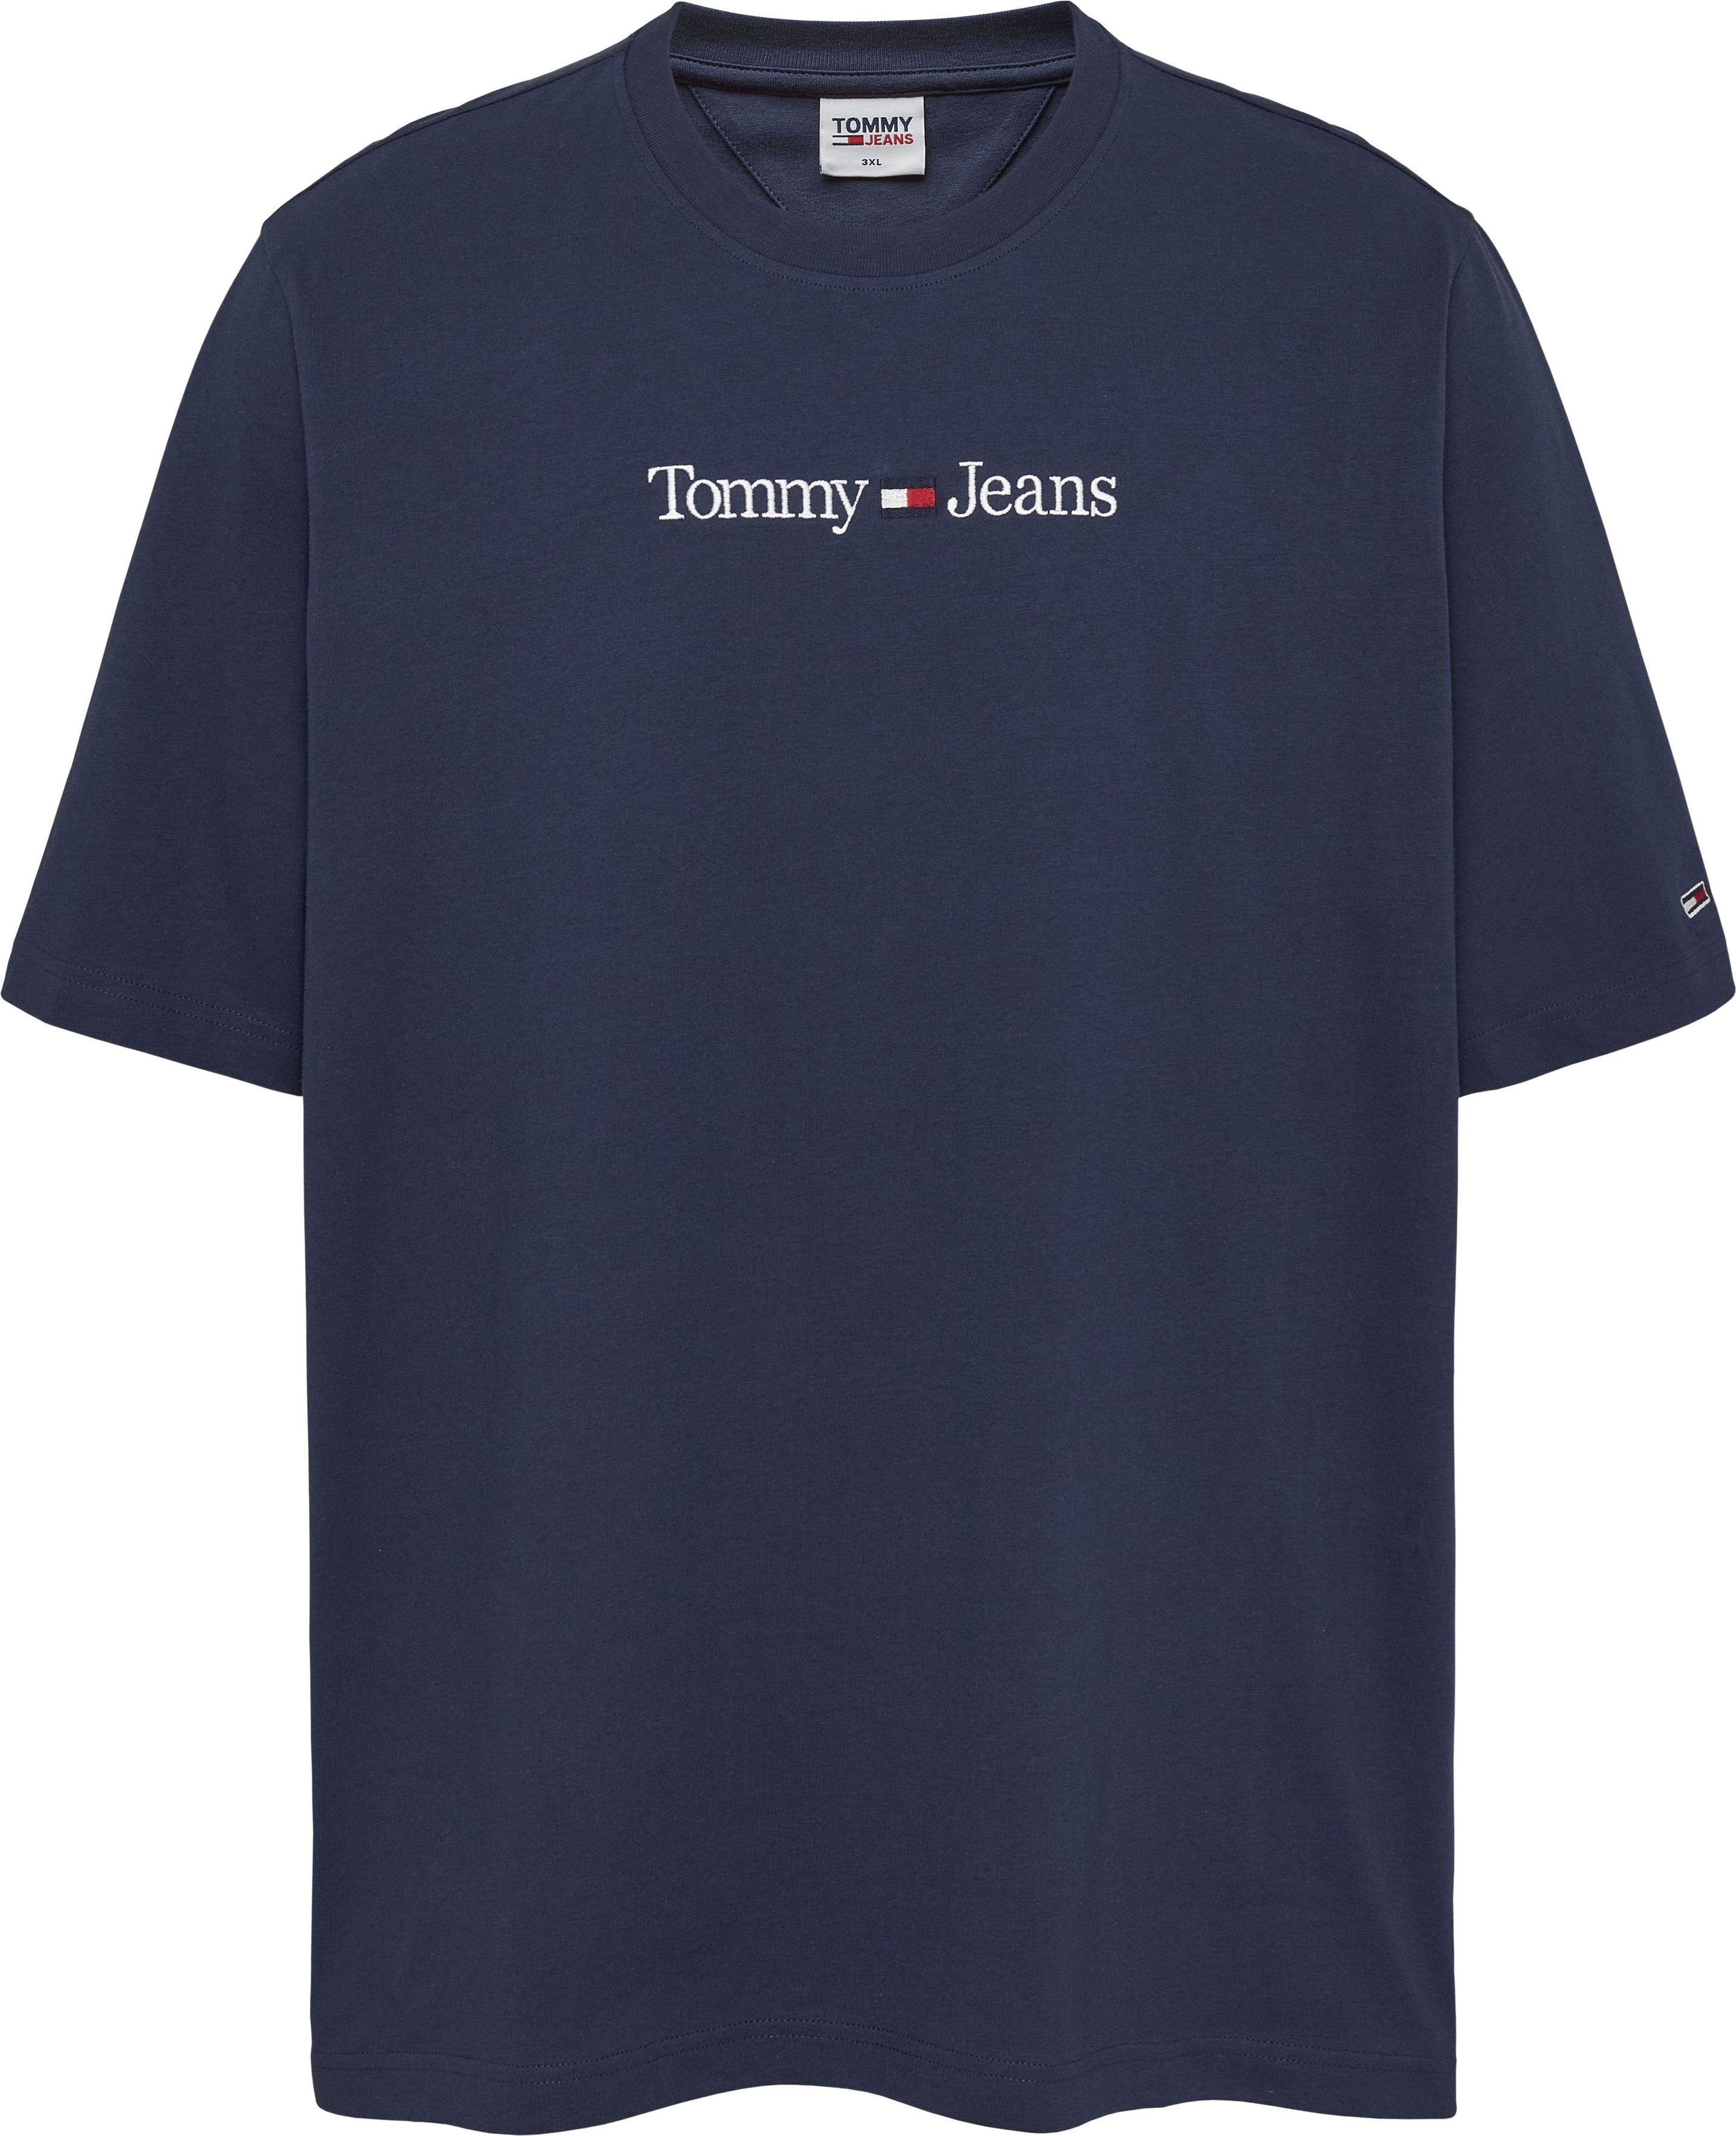 Brust auf LINEAR Plus LO Tommy-Jeans der TJM T-Shirt Tommy mit navy Branding PLUS Jeans